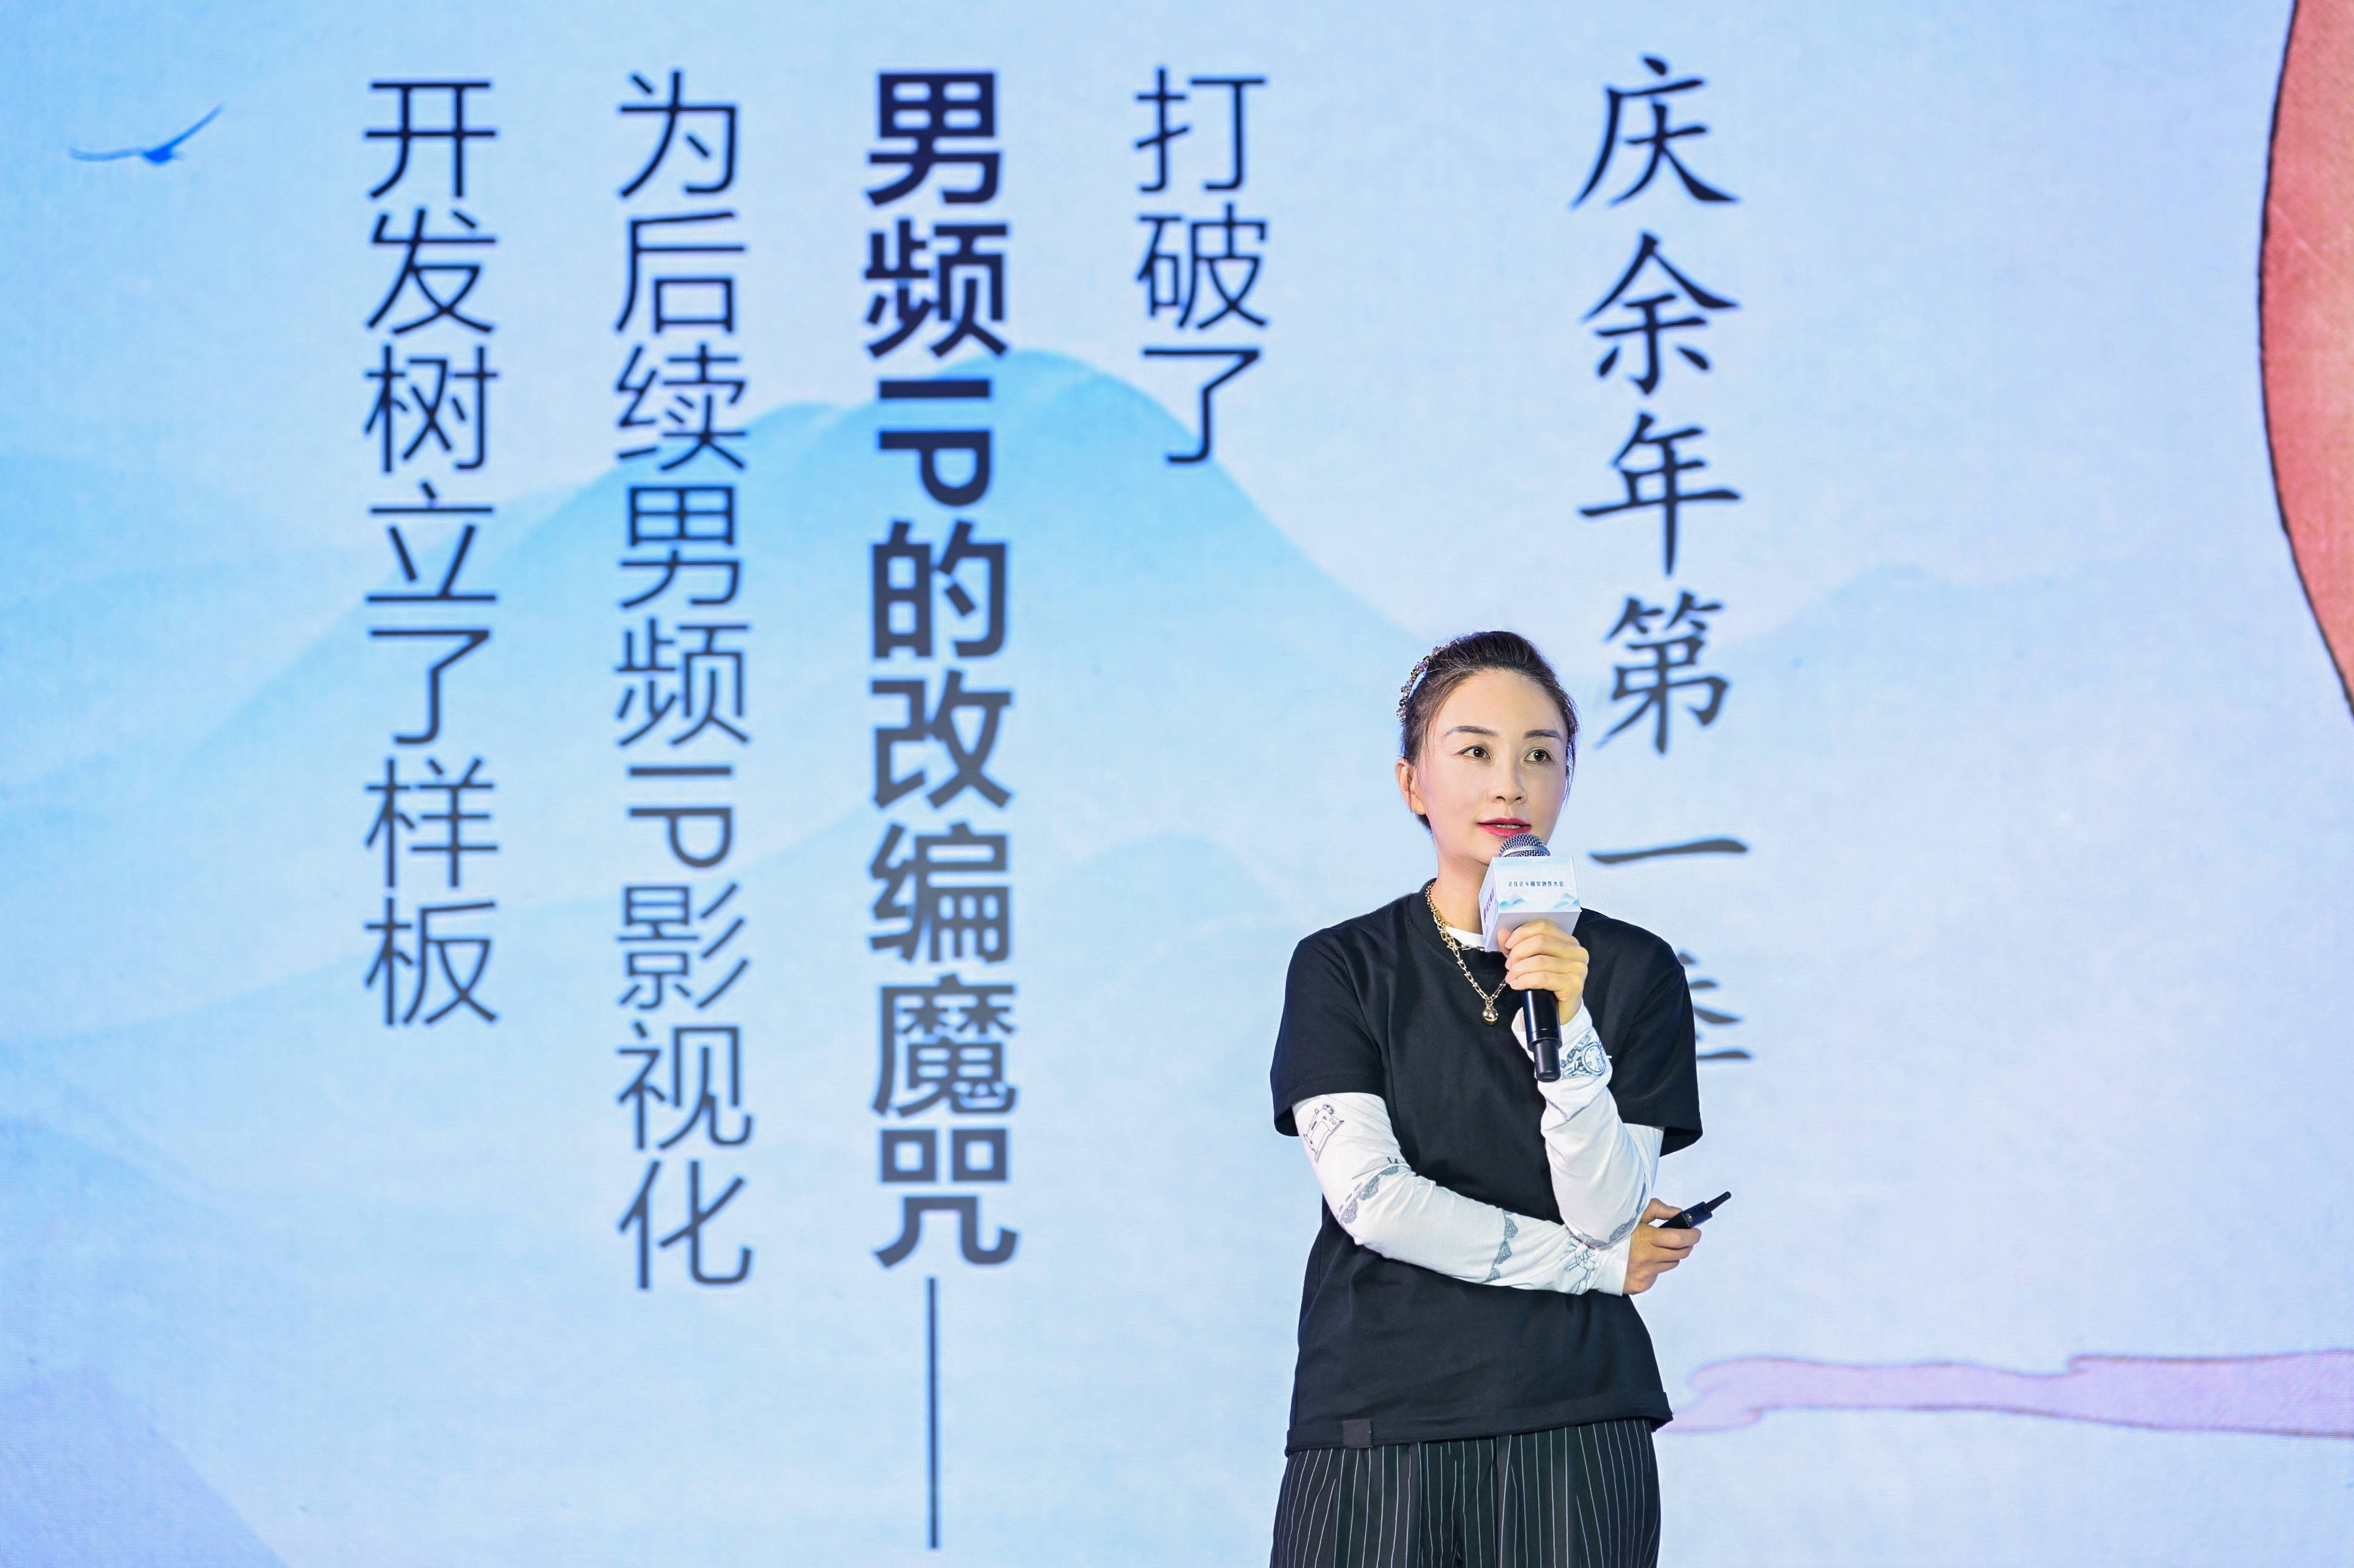 阅文集团旗下新丽传媒高级副总裁,新丽电视总裁于婉琴在大会上分享了